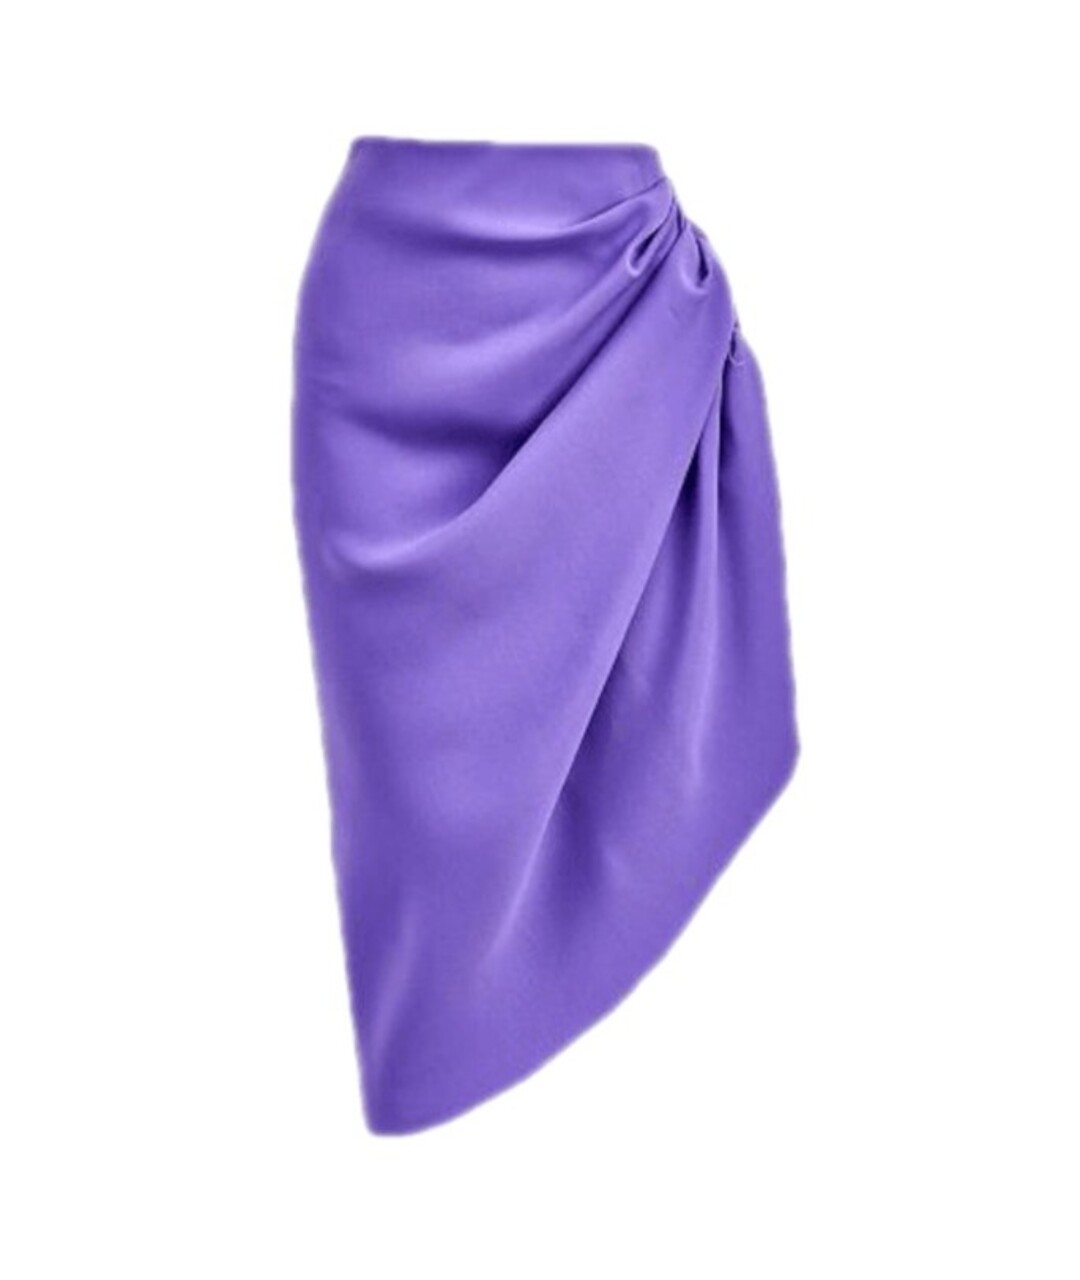 404NOTFOUND Фиолетовая полиэстеровая юбка мини, фото 1